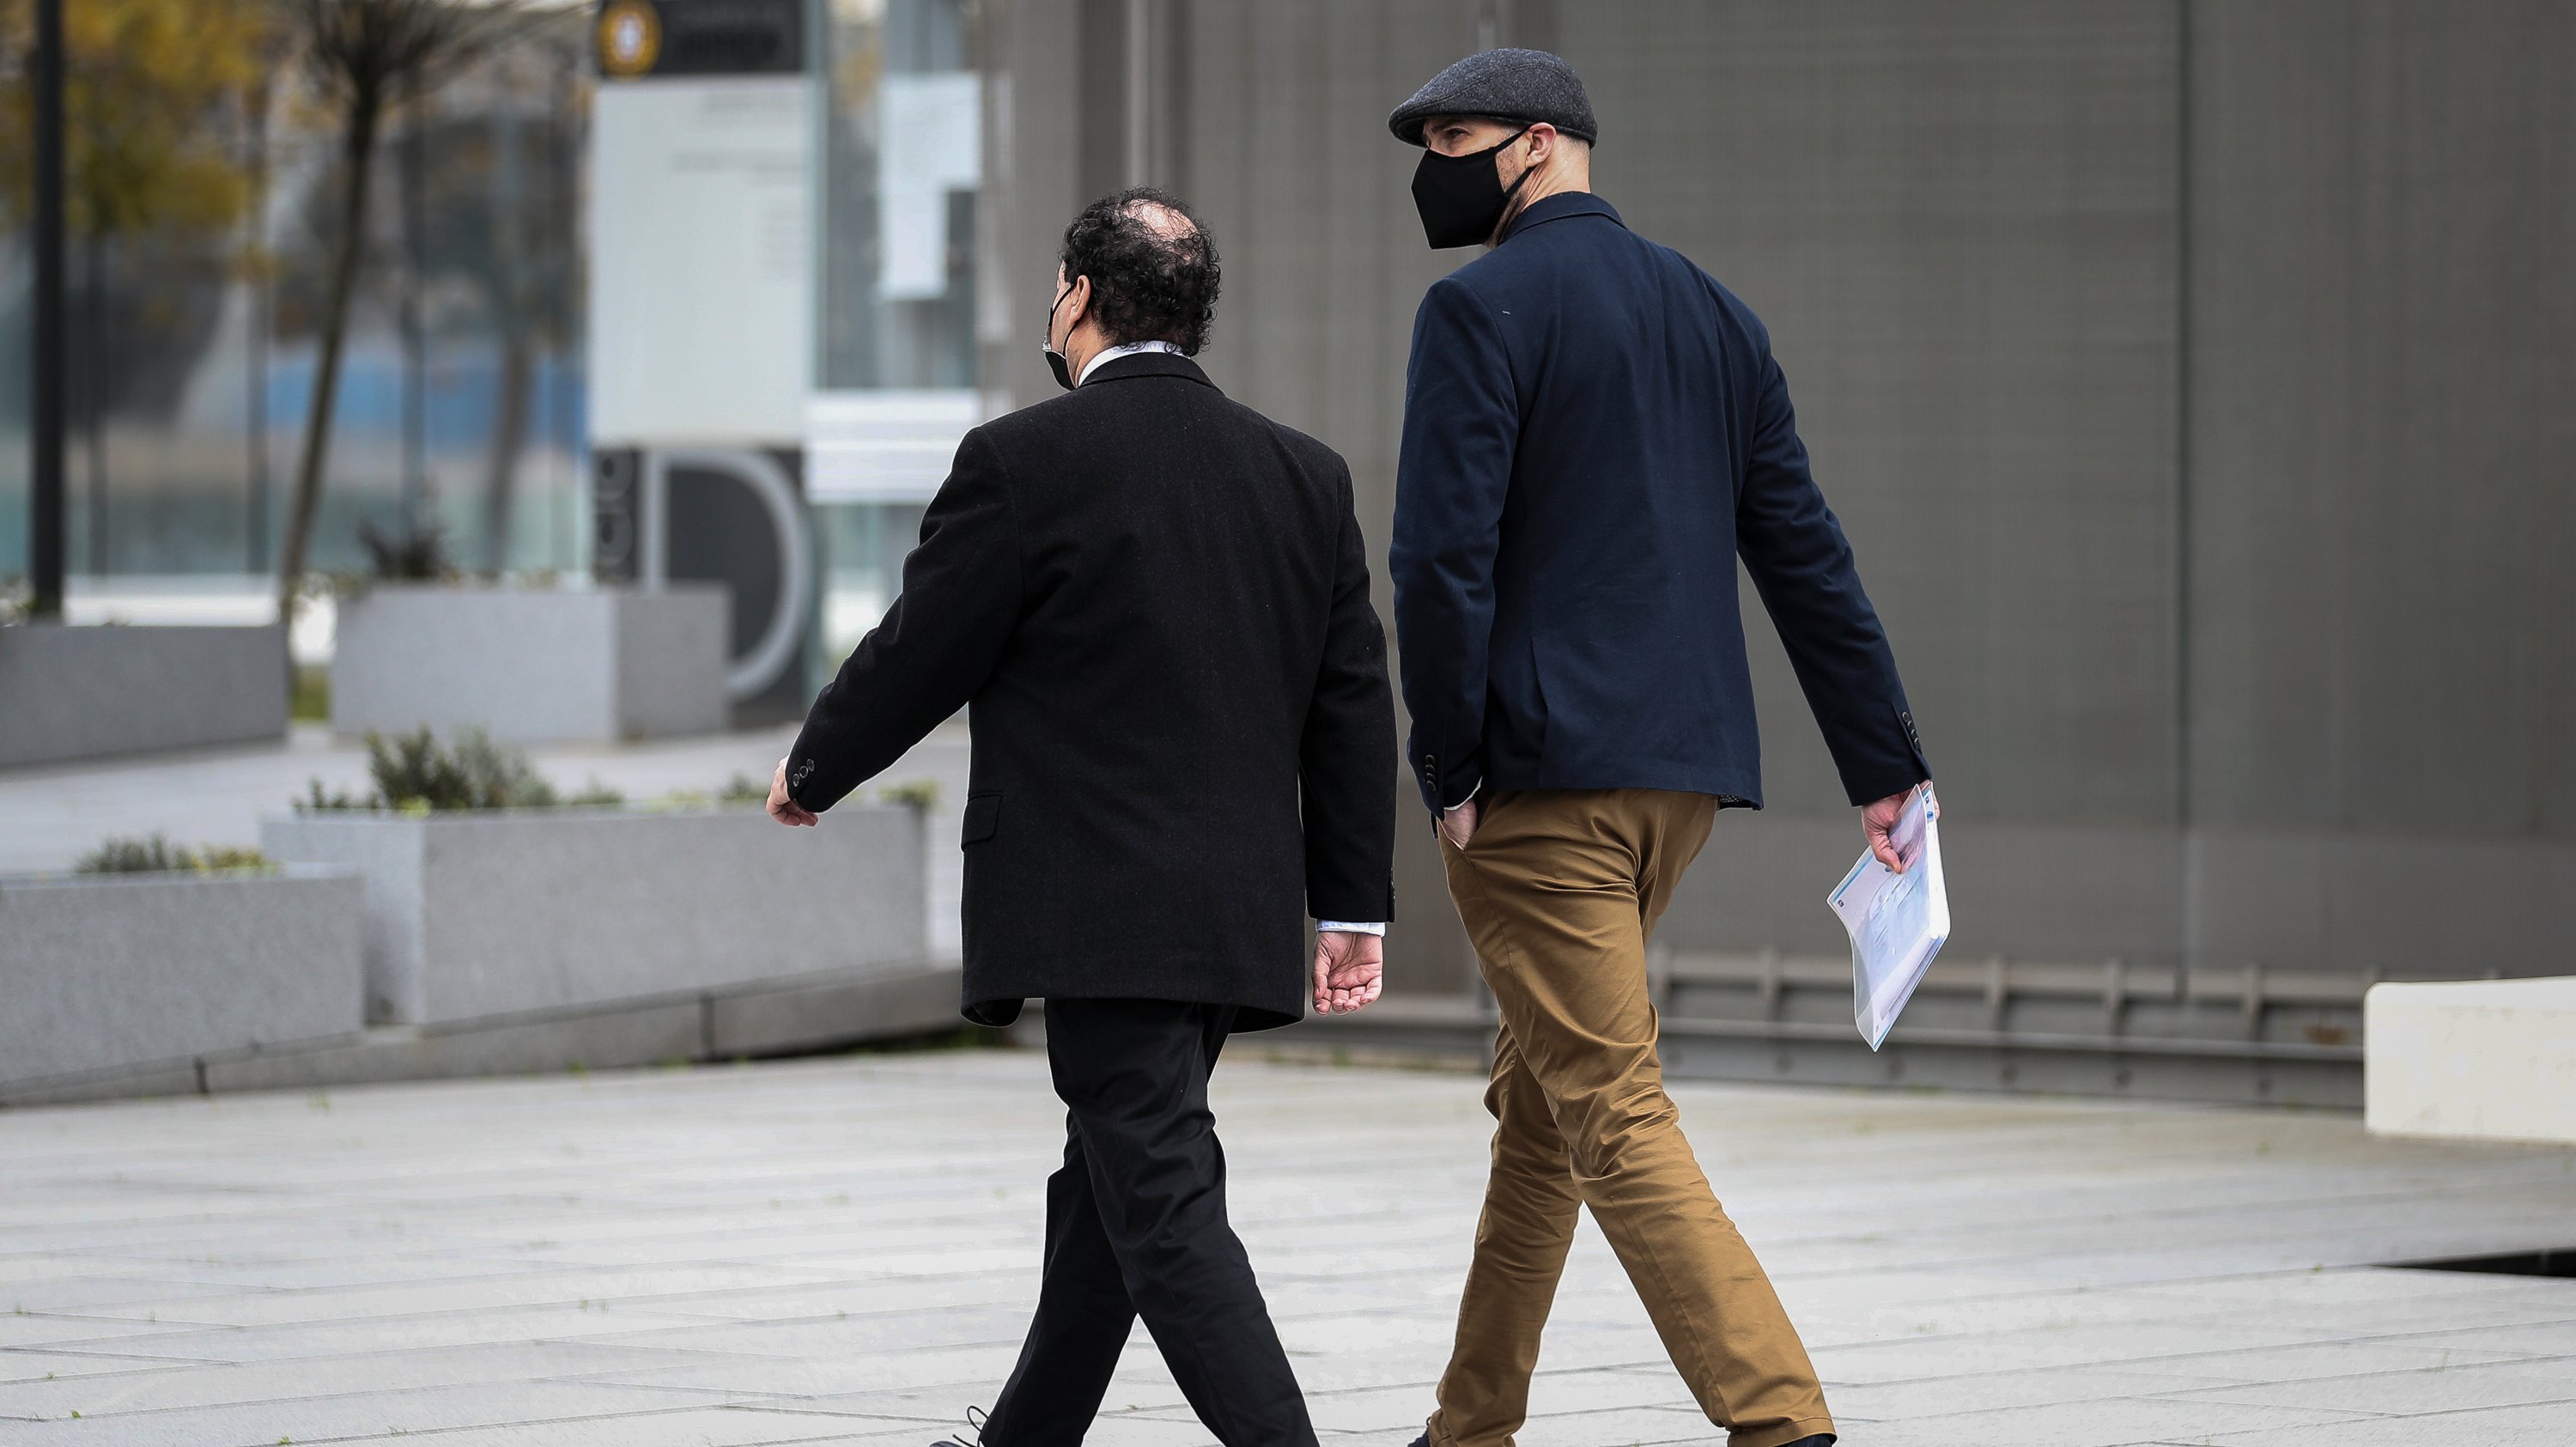 O inspetor Duarte Laja (à esquerda) e o inspetor Bruno Sousa (à direita) à chegada ao tribunal